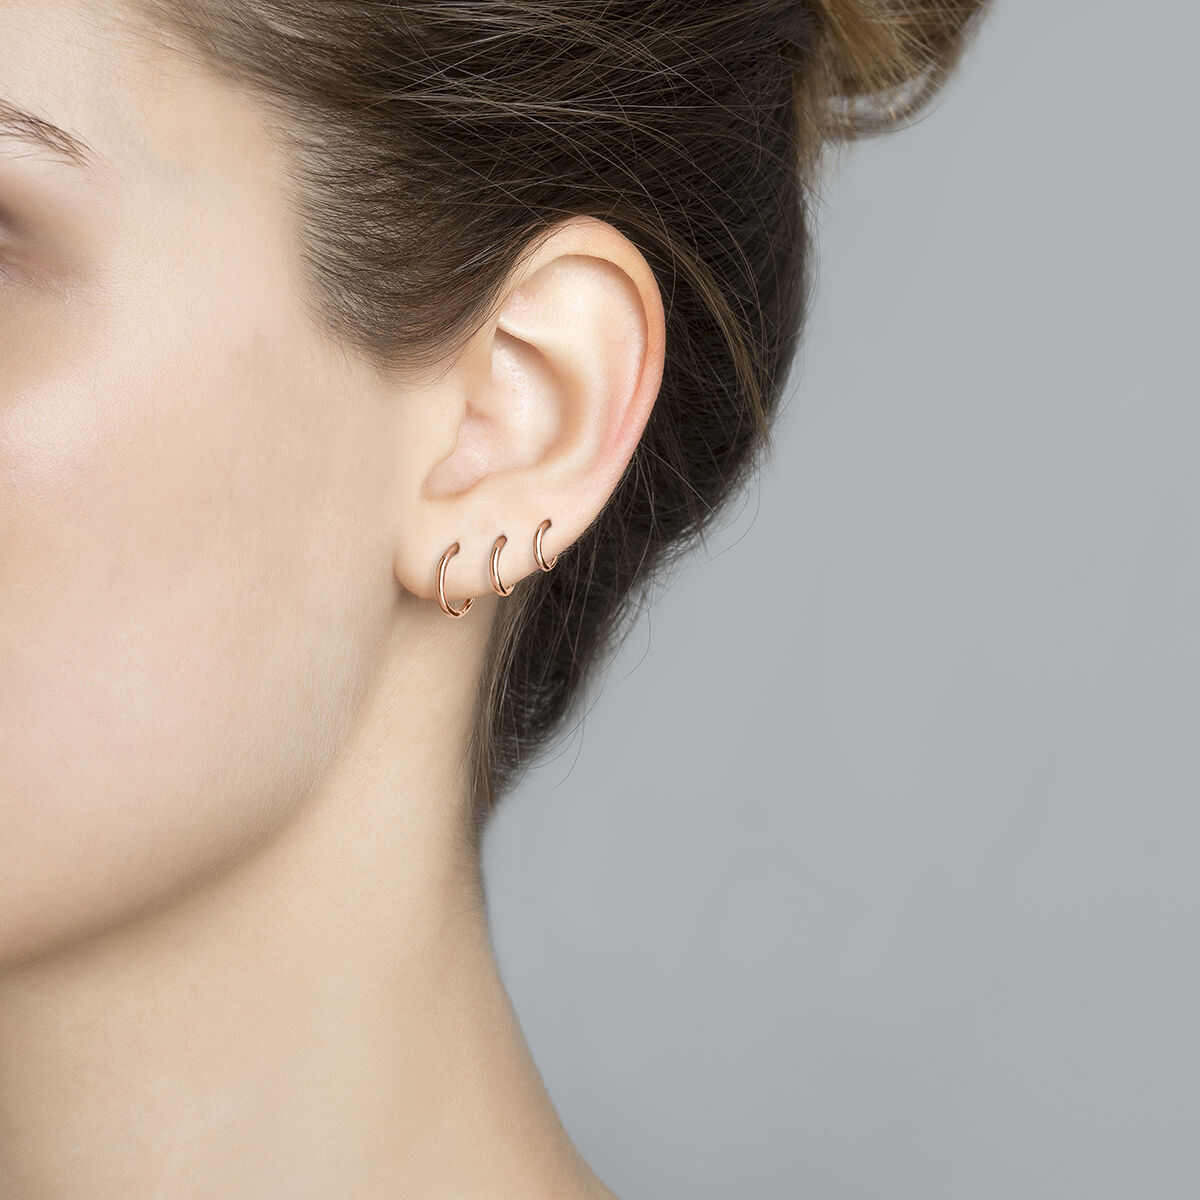 Boucle d'oreille piercing créole simple moyenne or rose , J03843-03-H, hi-res